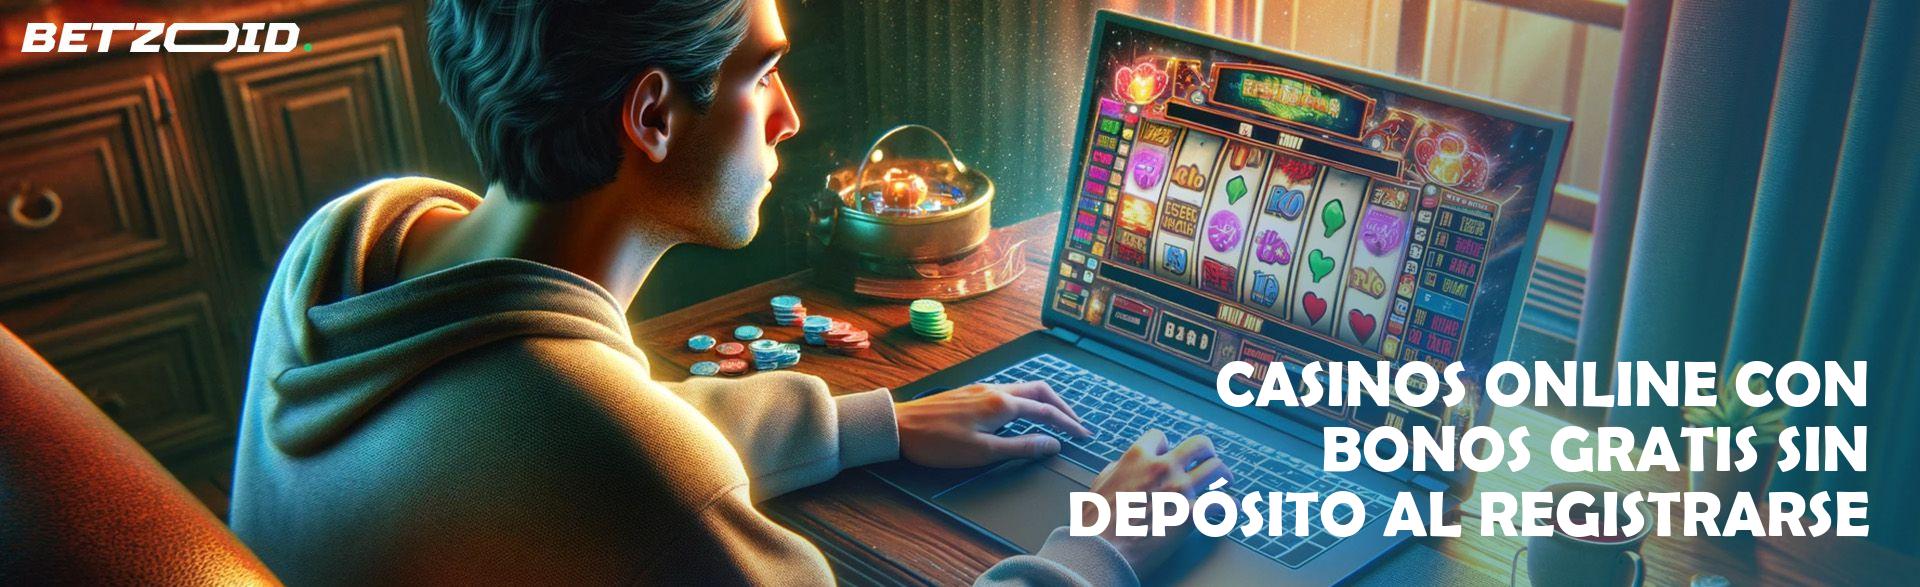 Casinos Online con Bonos Gratis sin Depósito Al Registrarse.